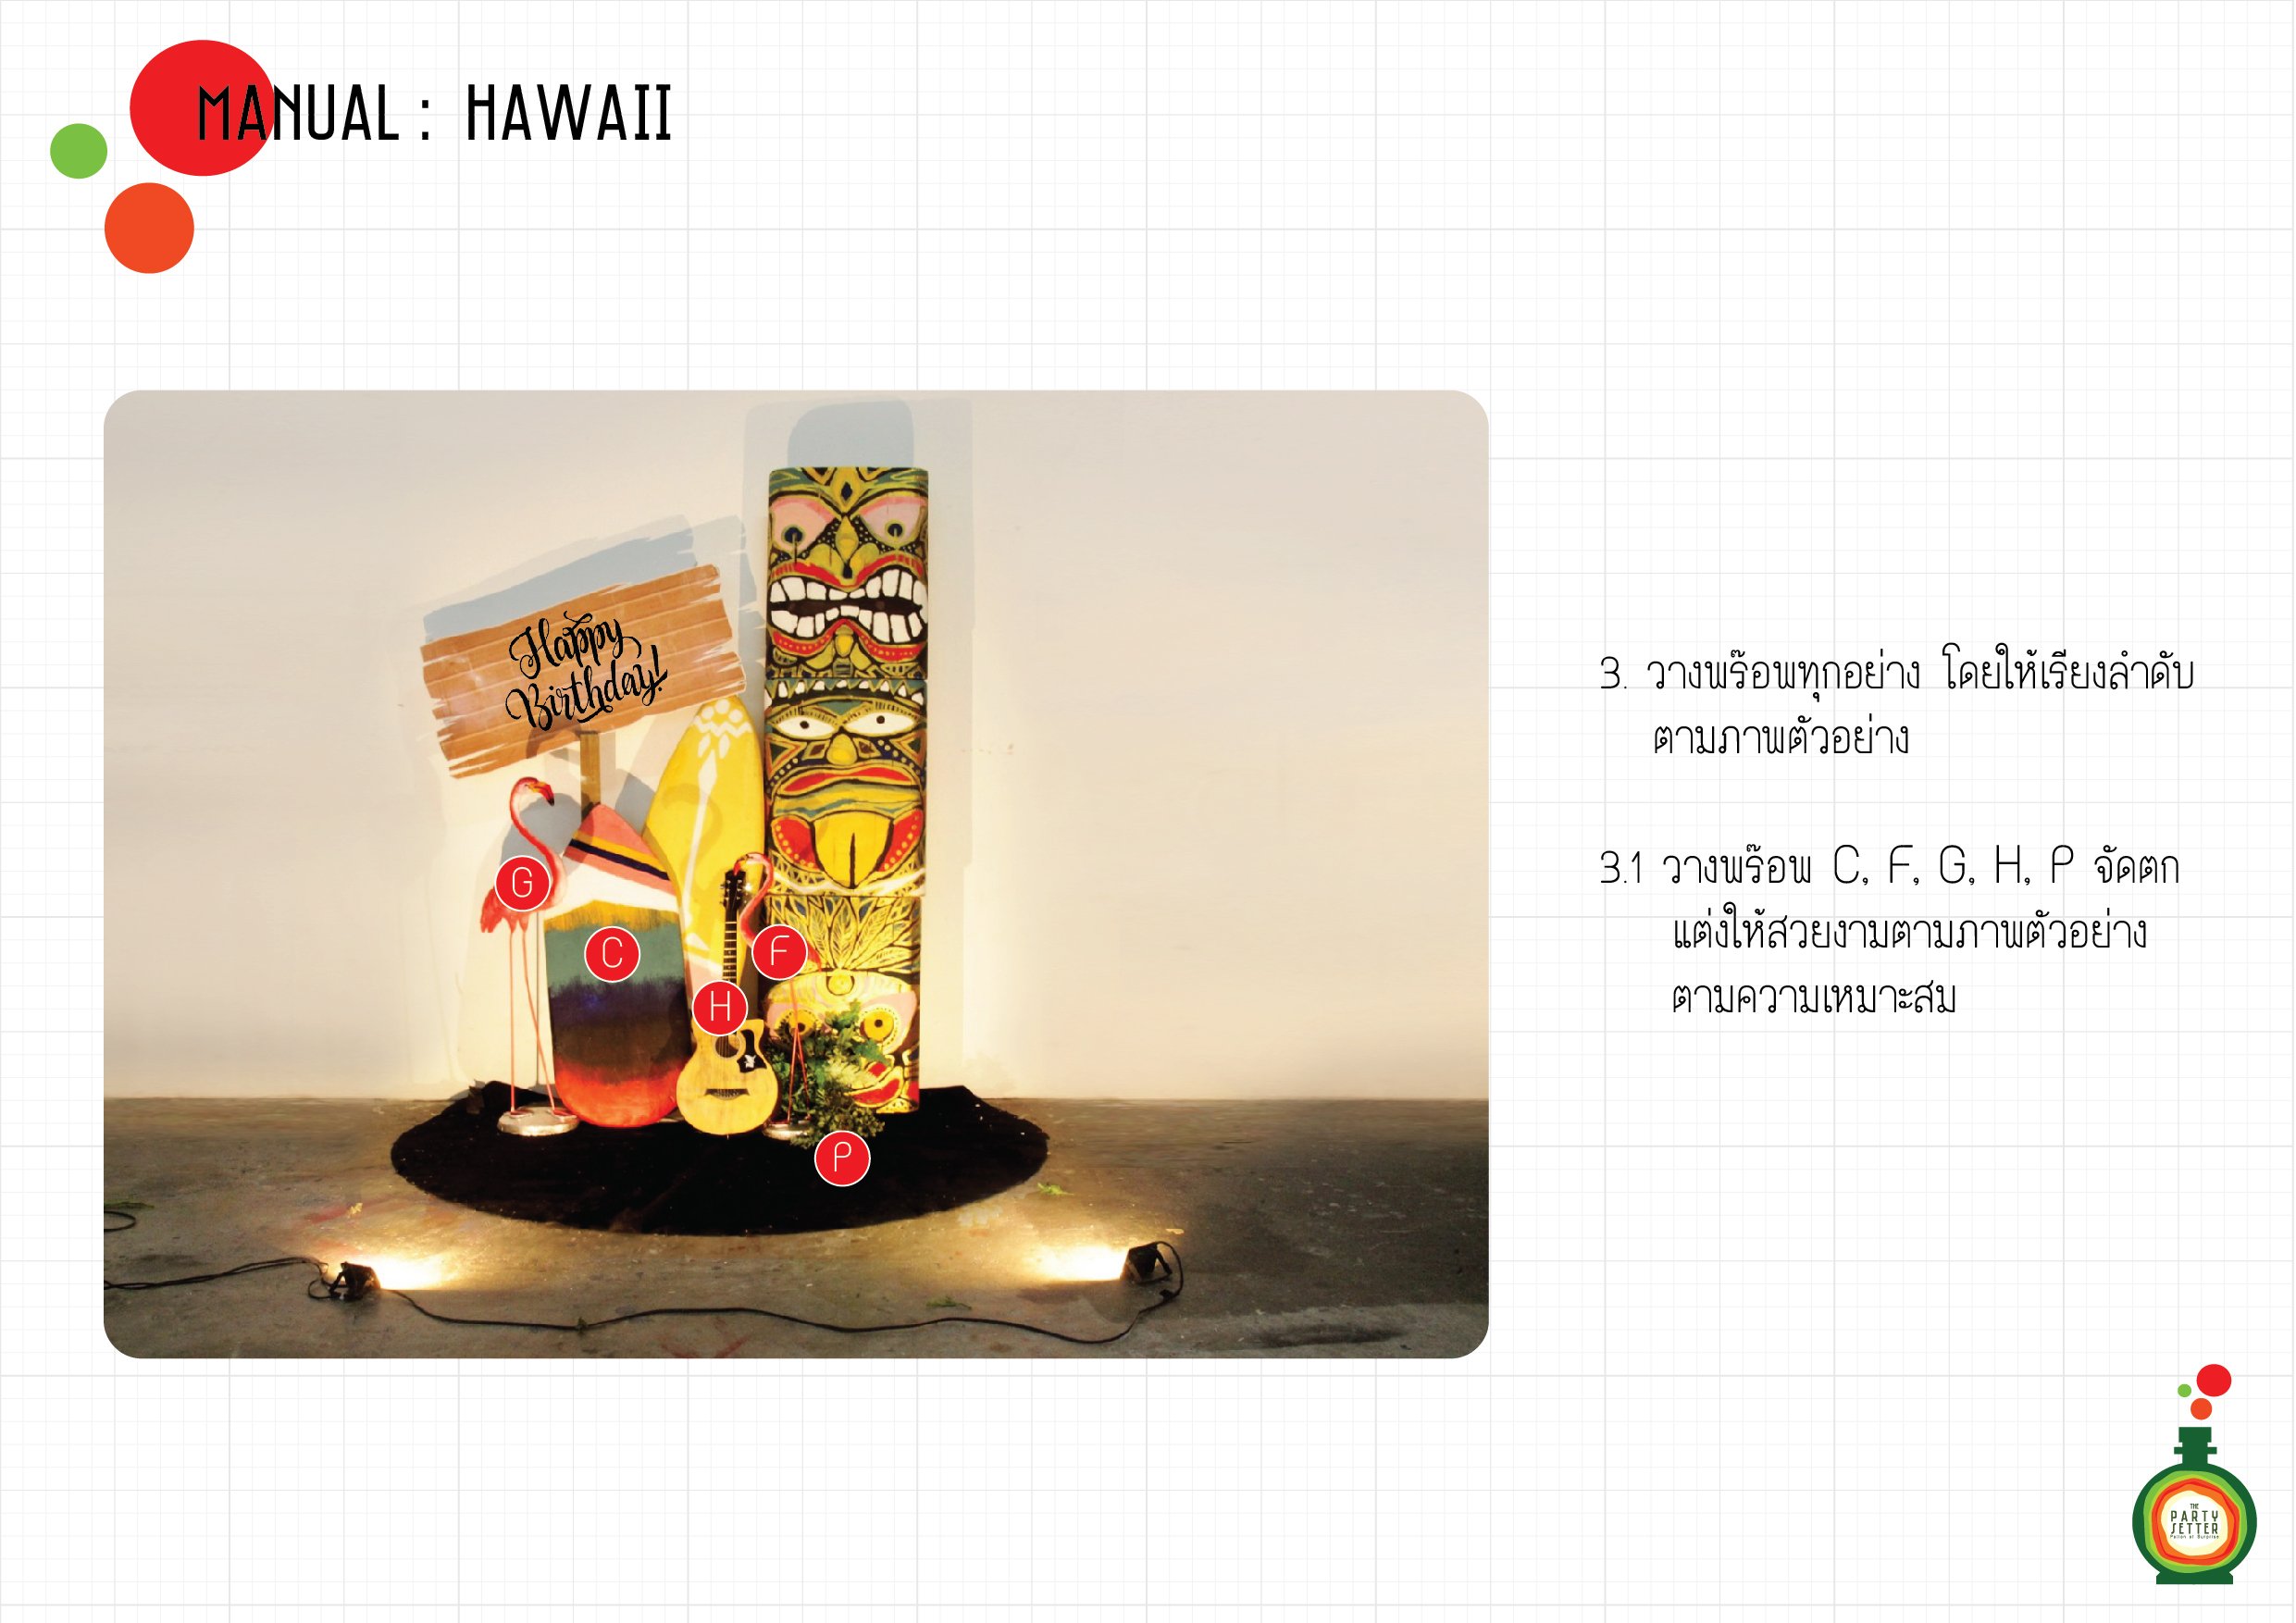 Manual_Hawaii-4-03.1-01.jpg